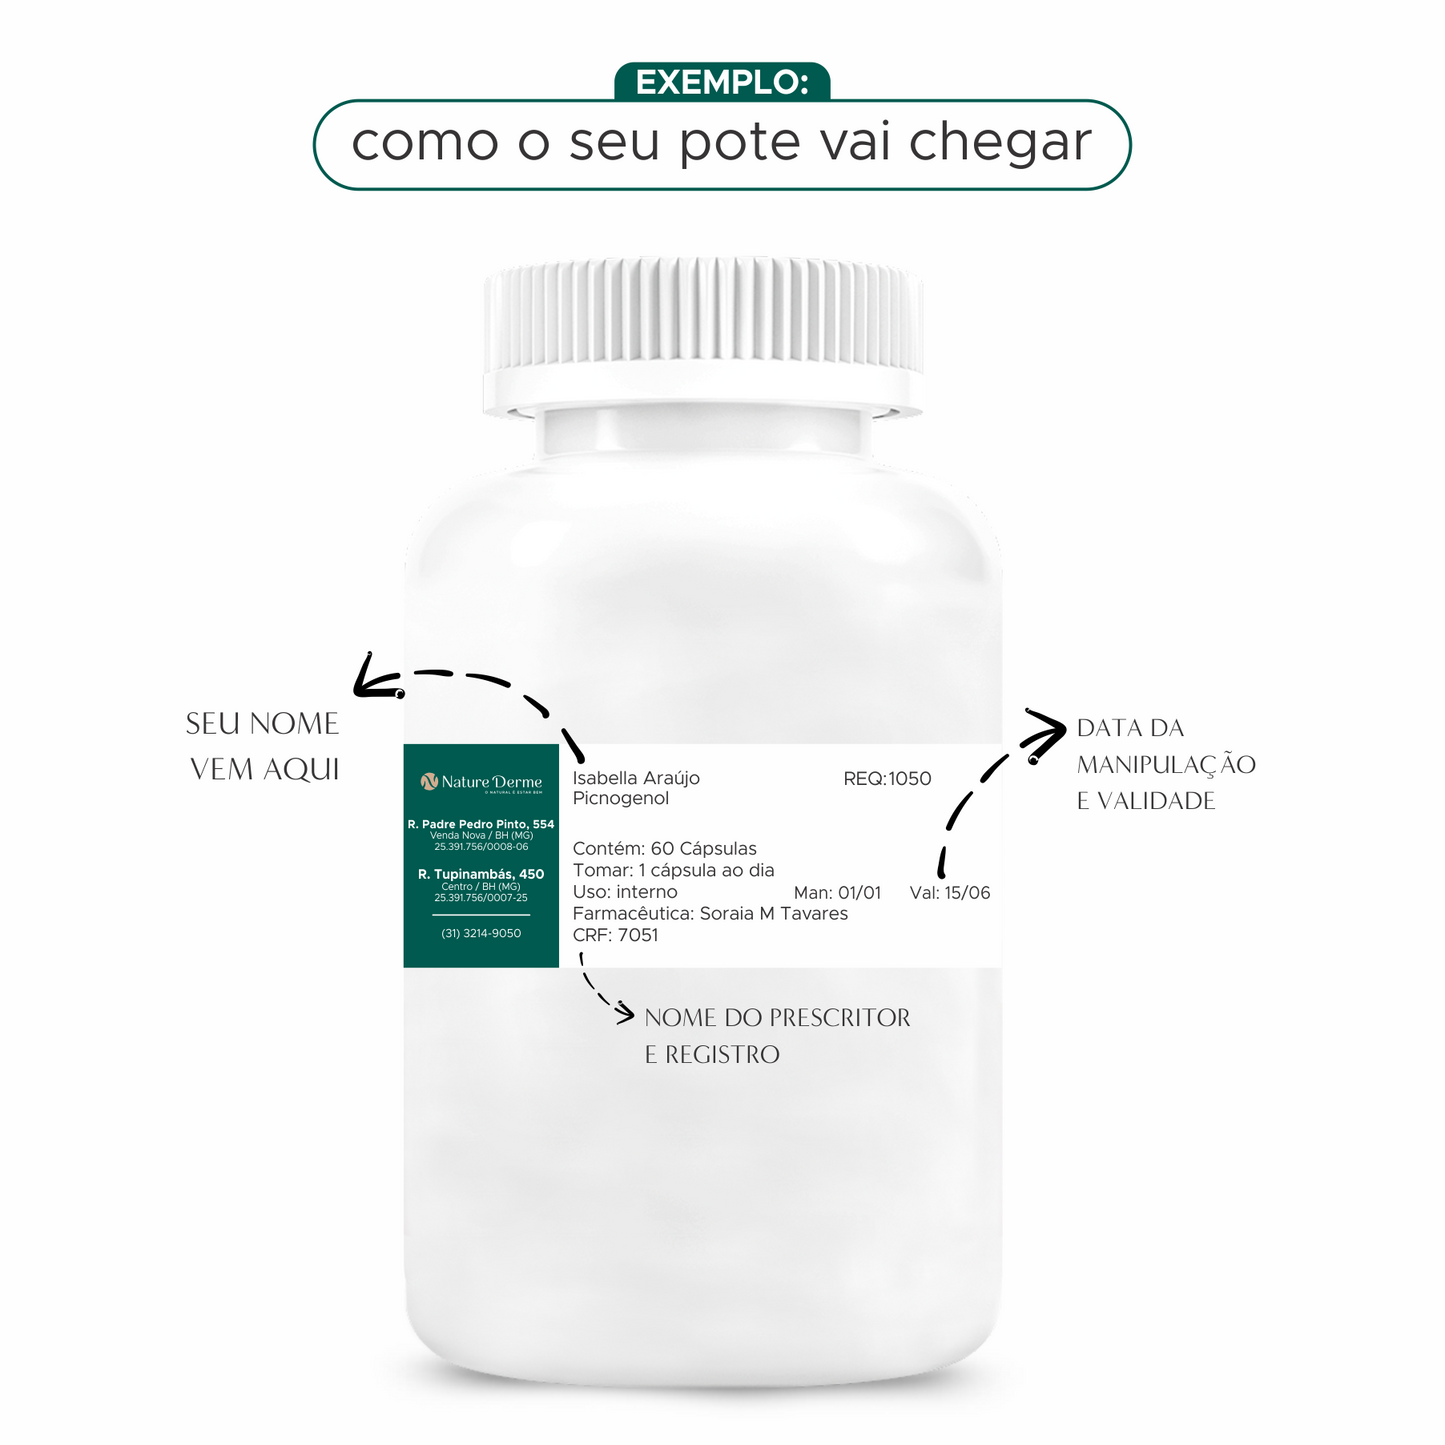 Condroitina 400mg + Glucosamina 500mg - Saúde das articulações